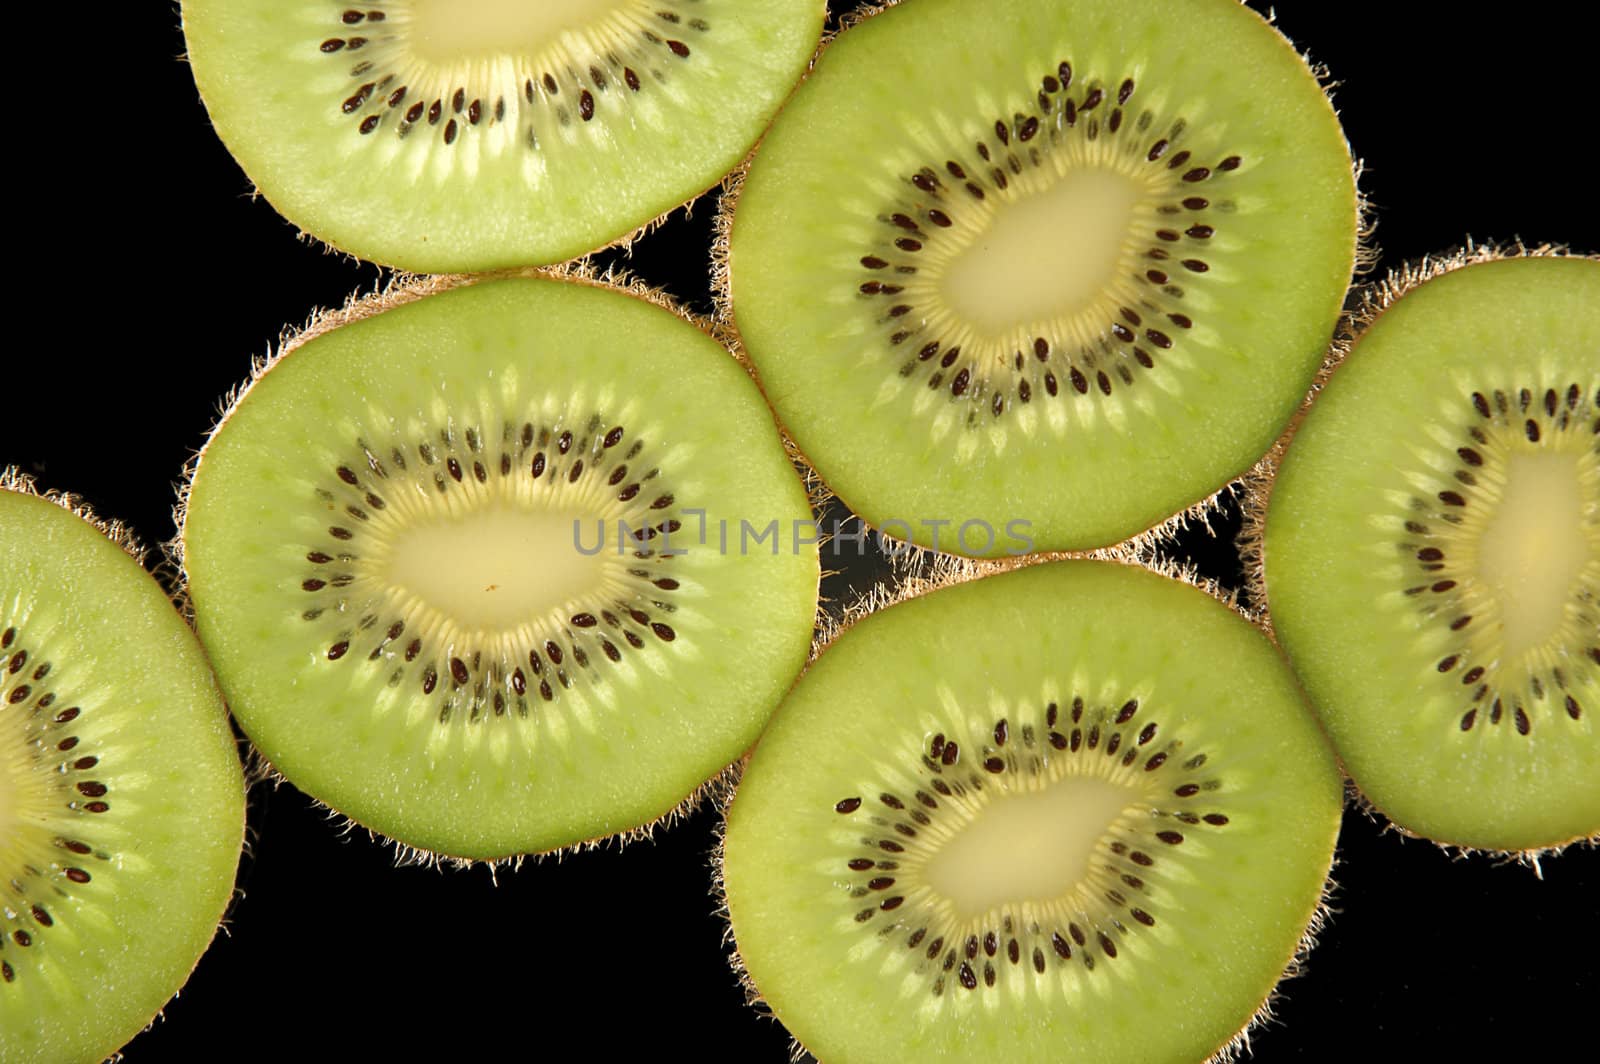 Thin slices of kiwi fruit on black background